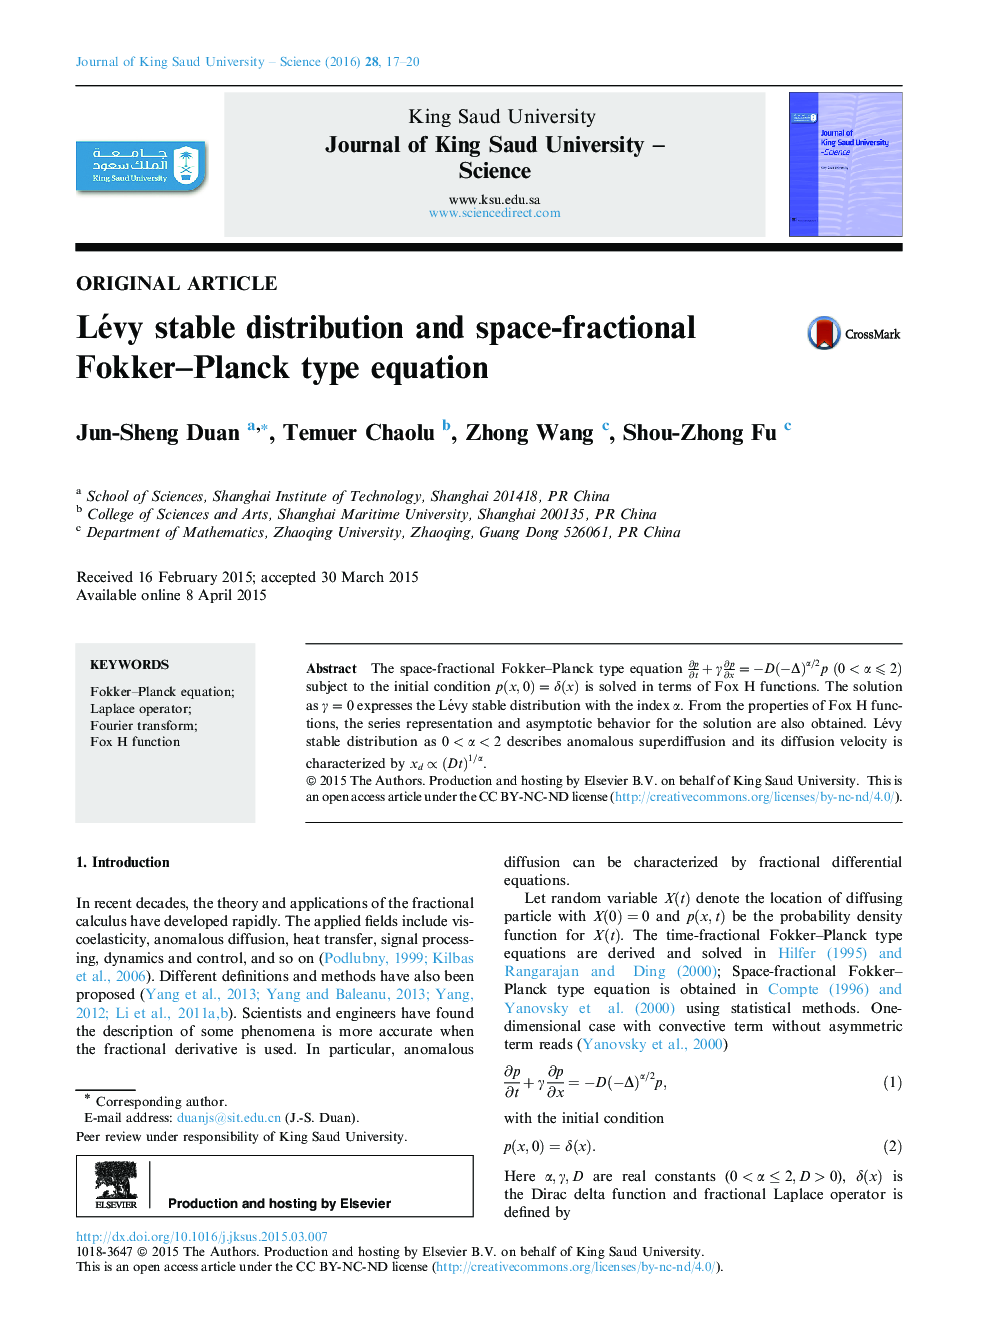 توزیع پایدار Lévy و معادله نوع Fokker-Planck فضای کسری